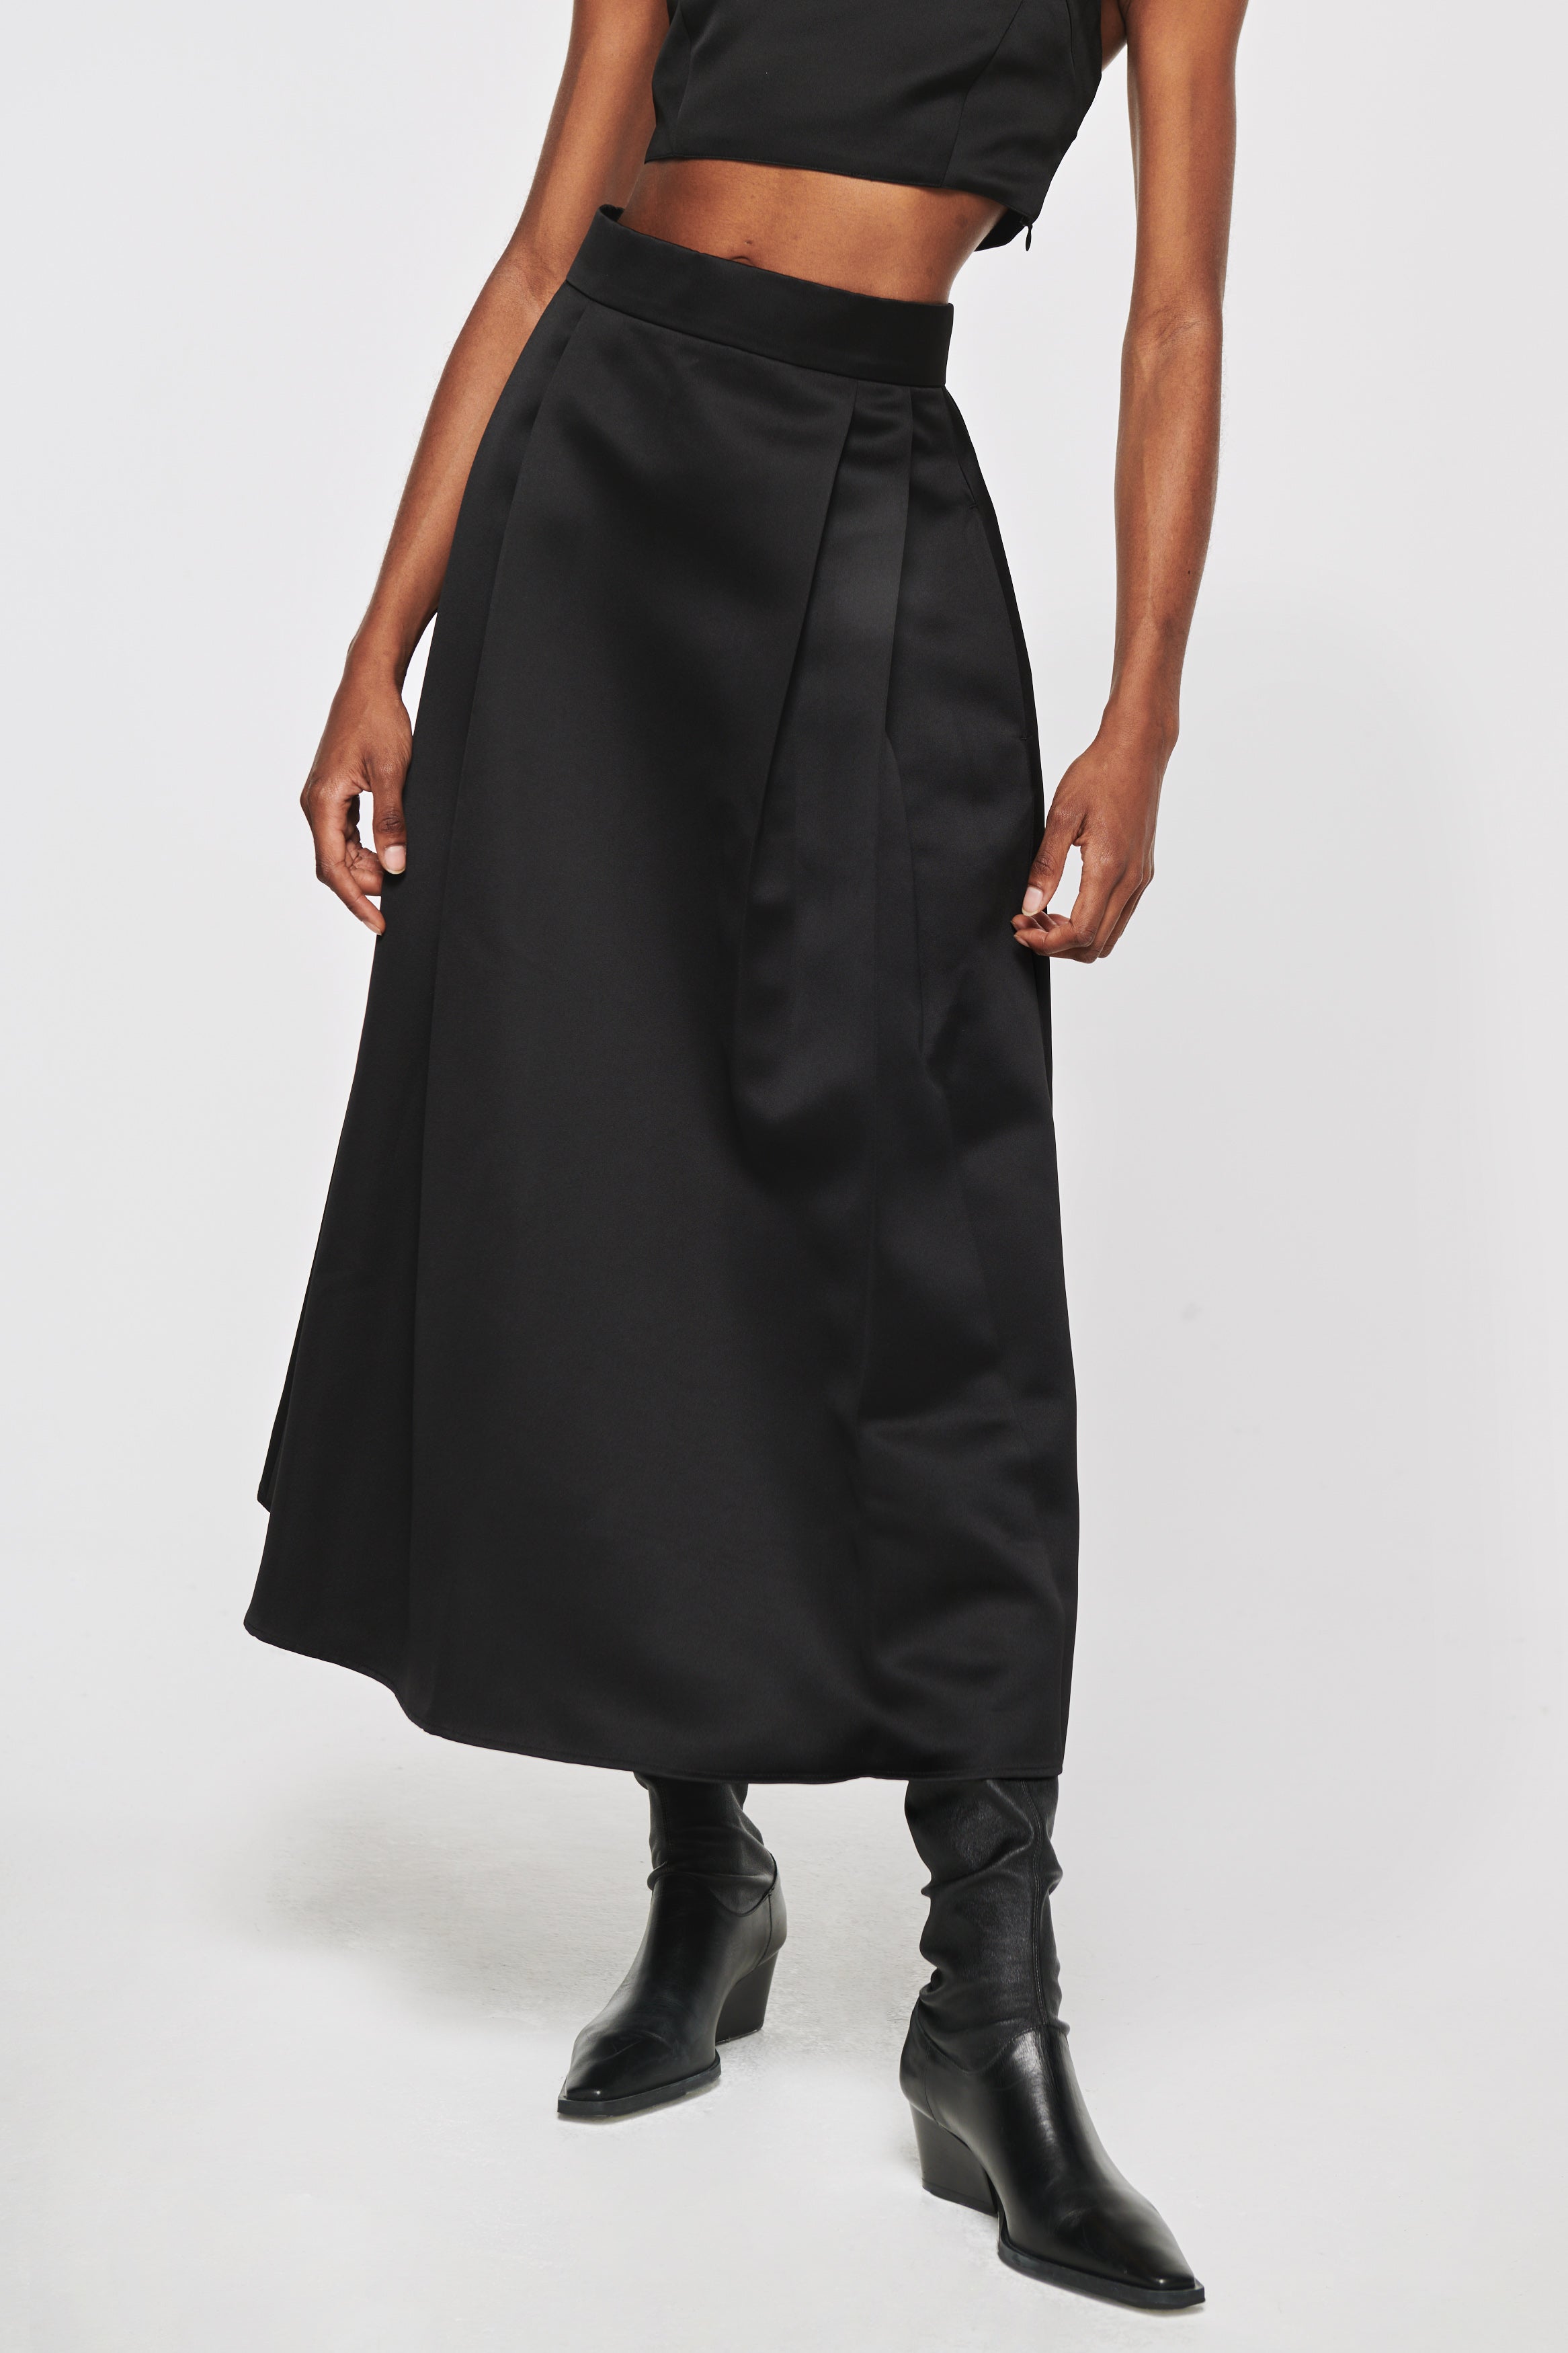 Lux, Satin Full Midi Skirt in Black